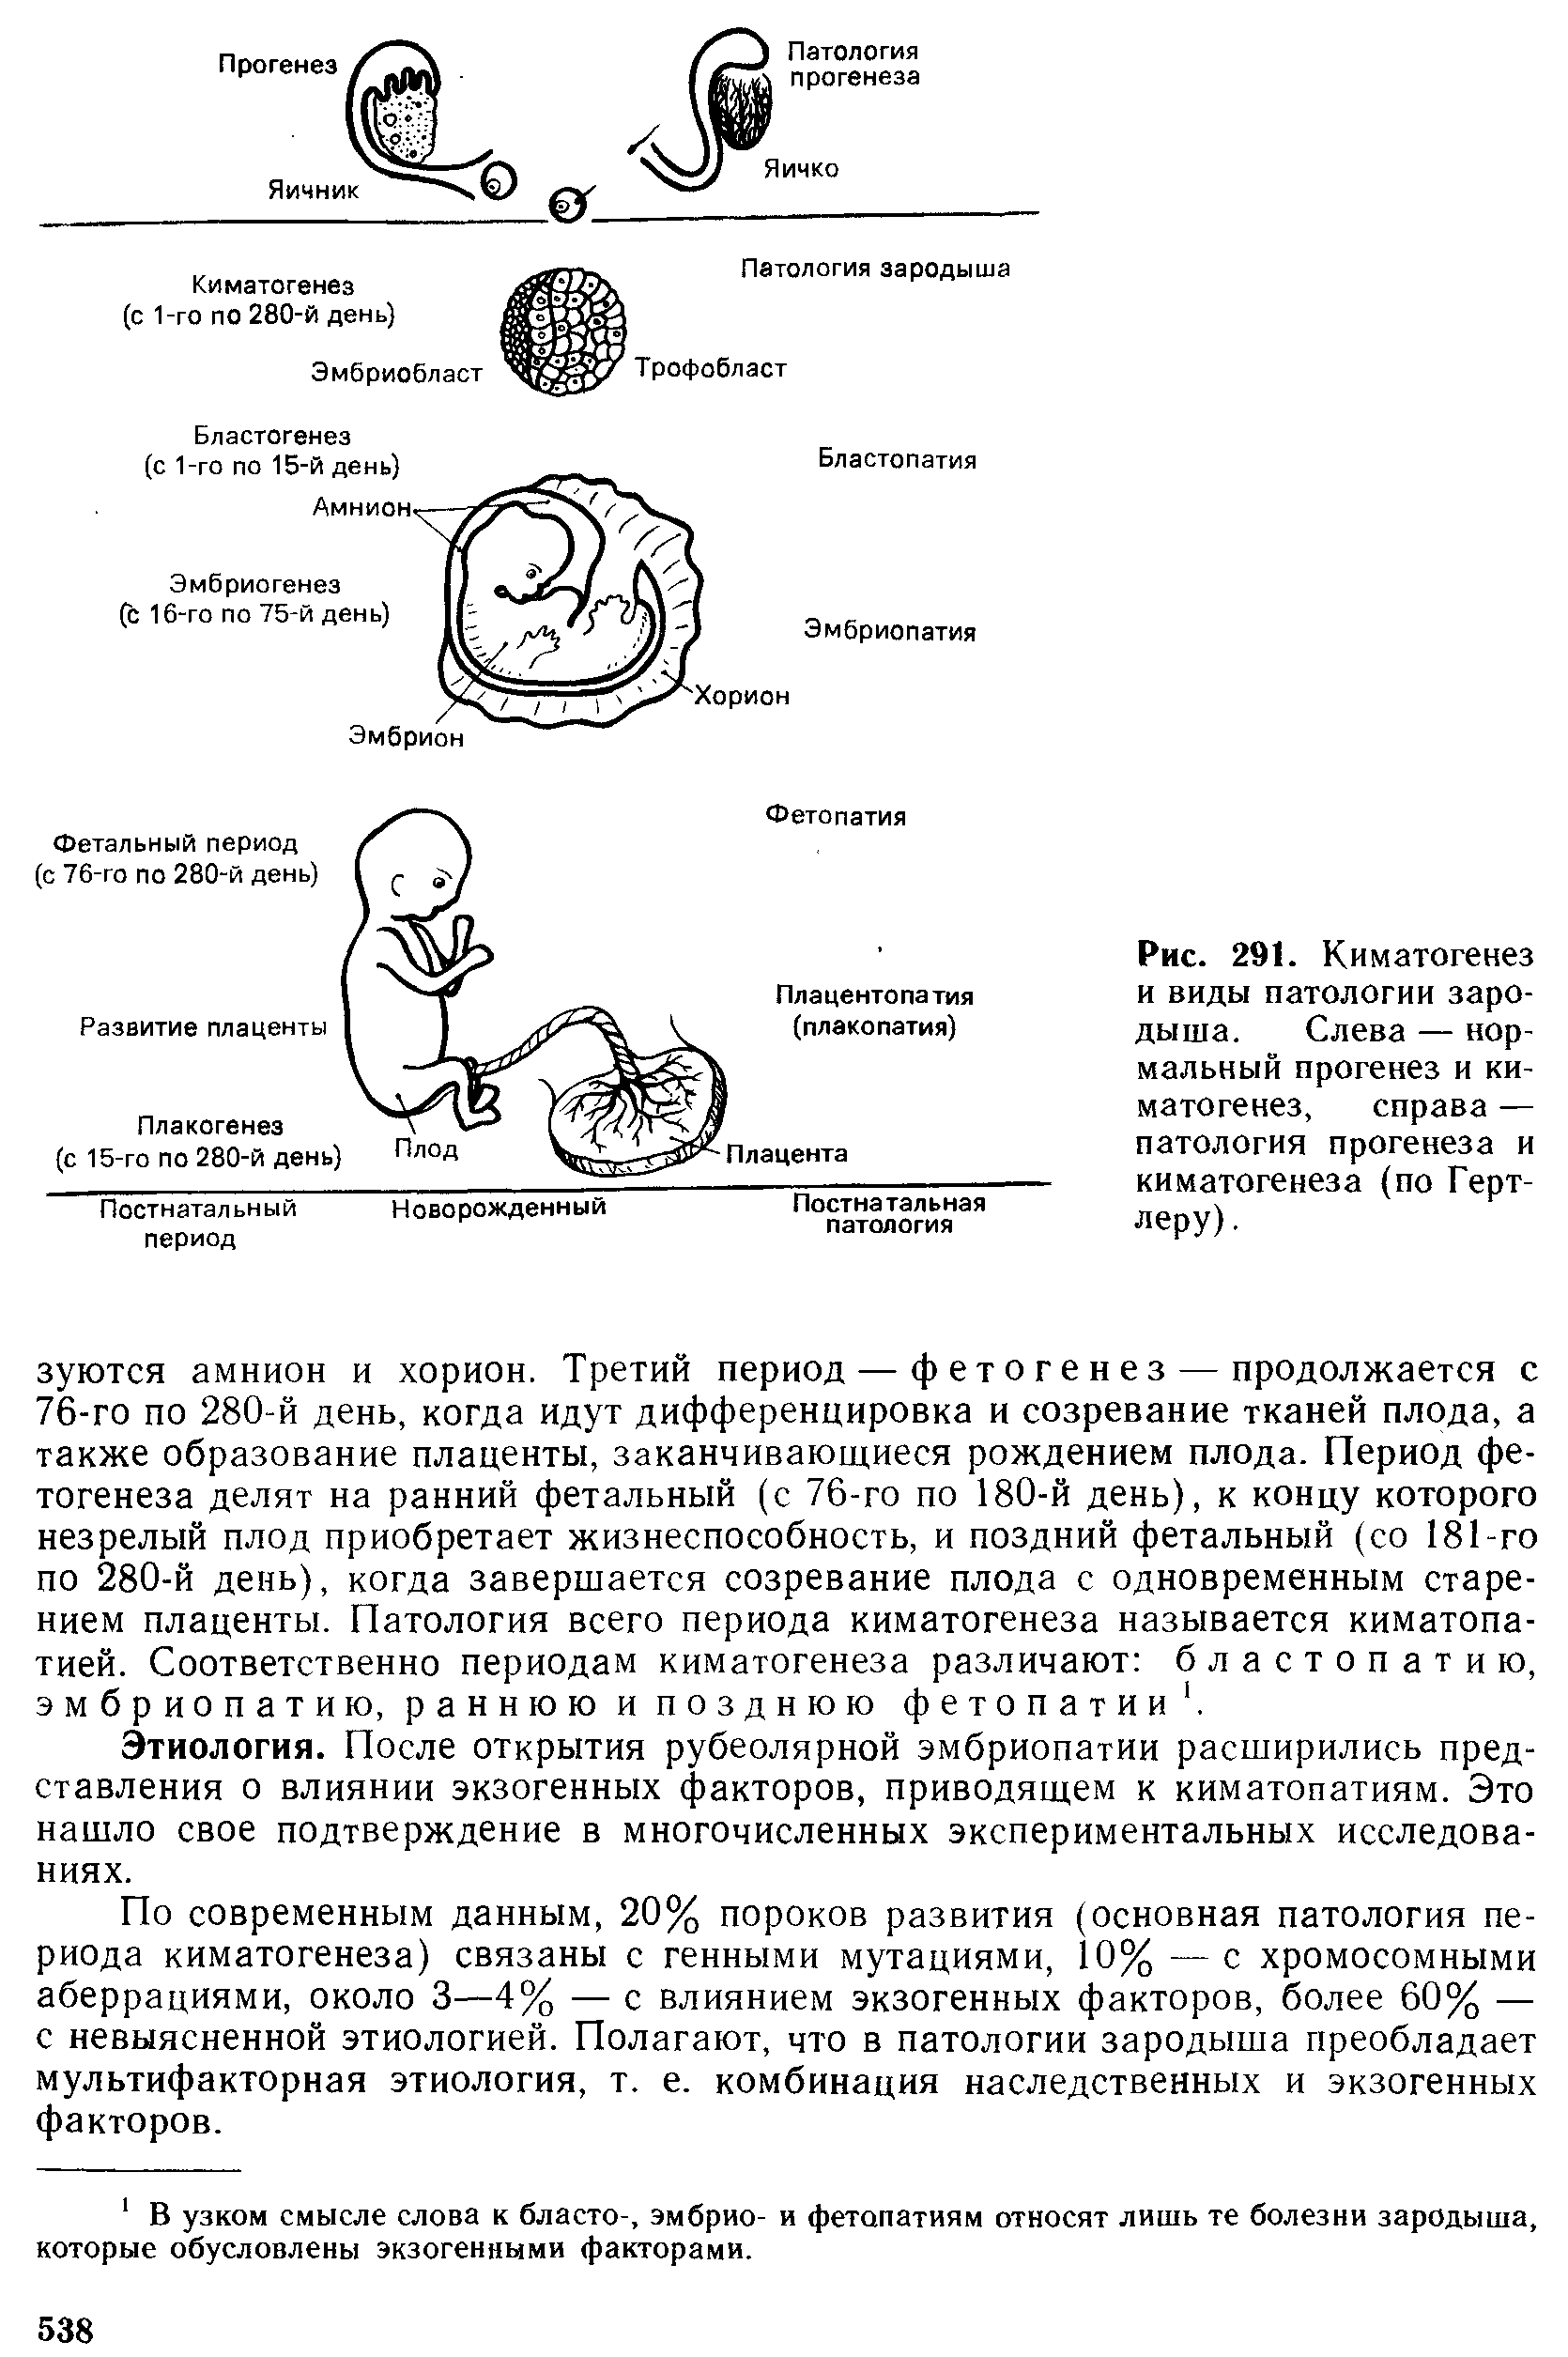 Рис. 291. Киматогенез и виды патологии зародыша. Слева — нормальный прогенез и киматогенез, справа — патология прогенеза и киматогенеза (по Герт-леру).